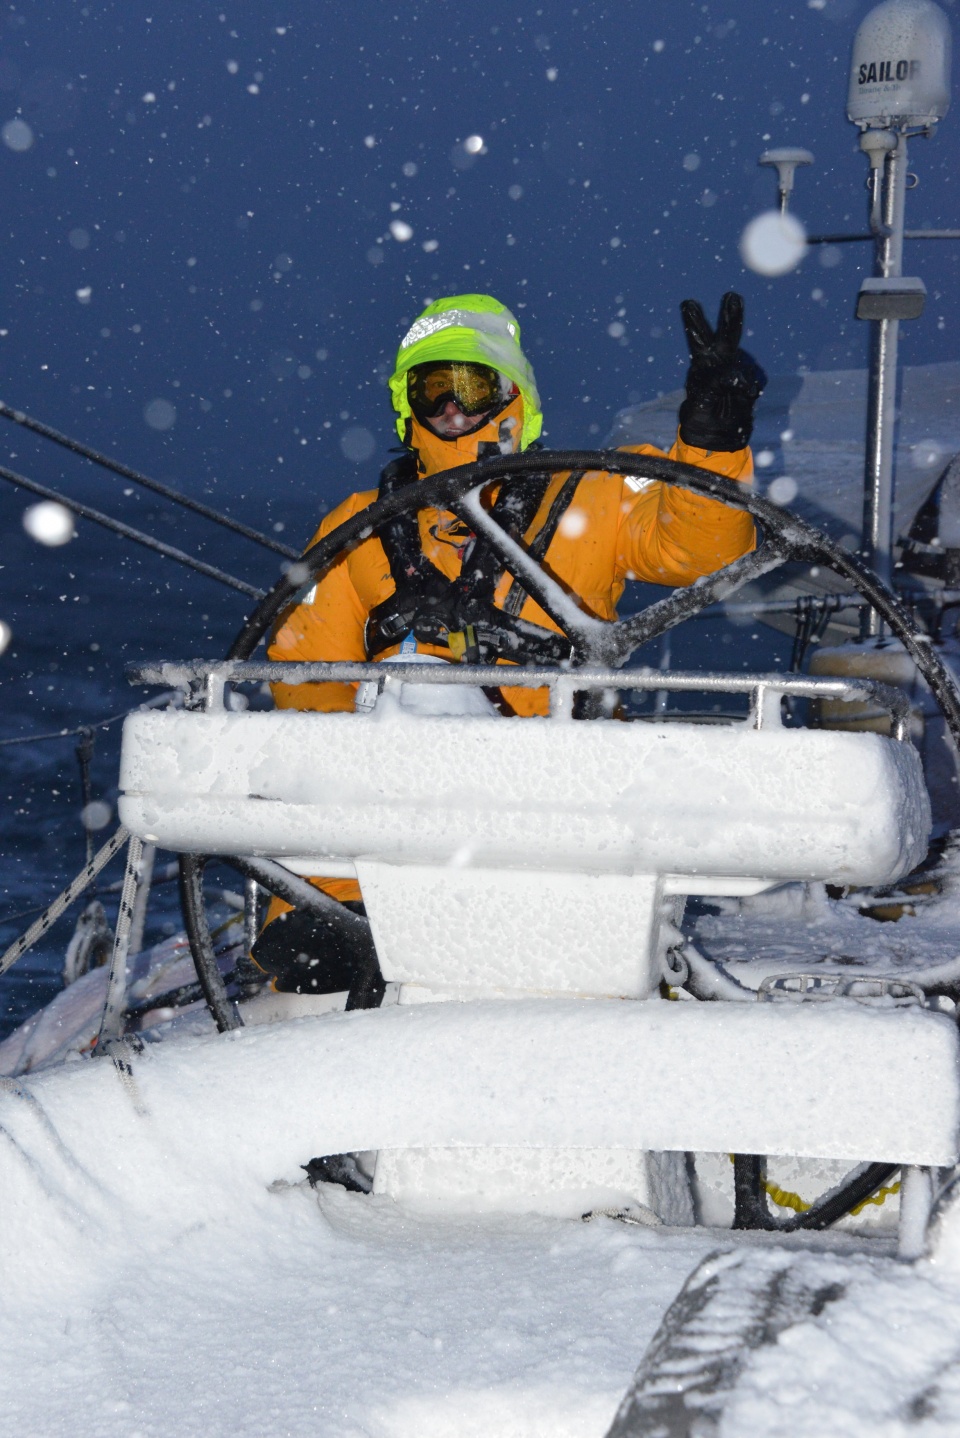 Ich rejs już trwa ponad siedem tygodni. Polscy żeglarze Katharsis II minęli już półmetek trasy i mimo niesprzyjających warunków pogodowych mają szansę pobić rekord świata. Fot. Antarctic Circle 60 S.pl